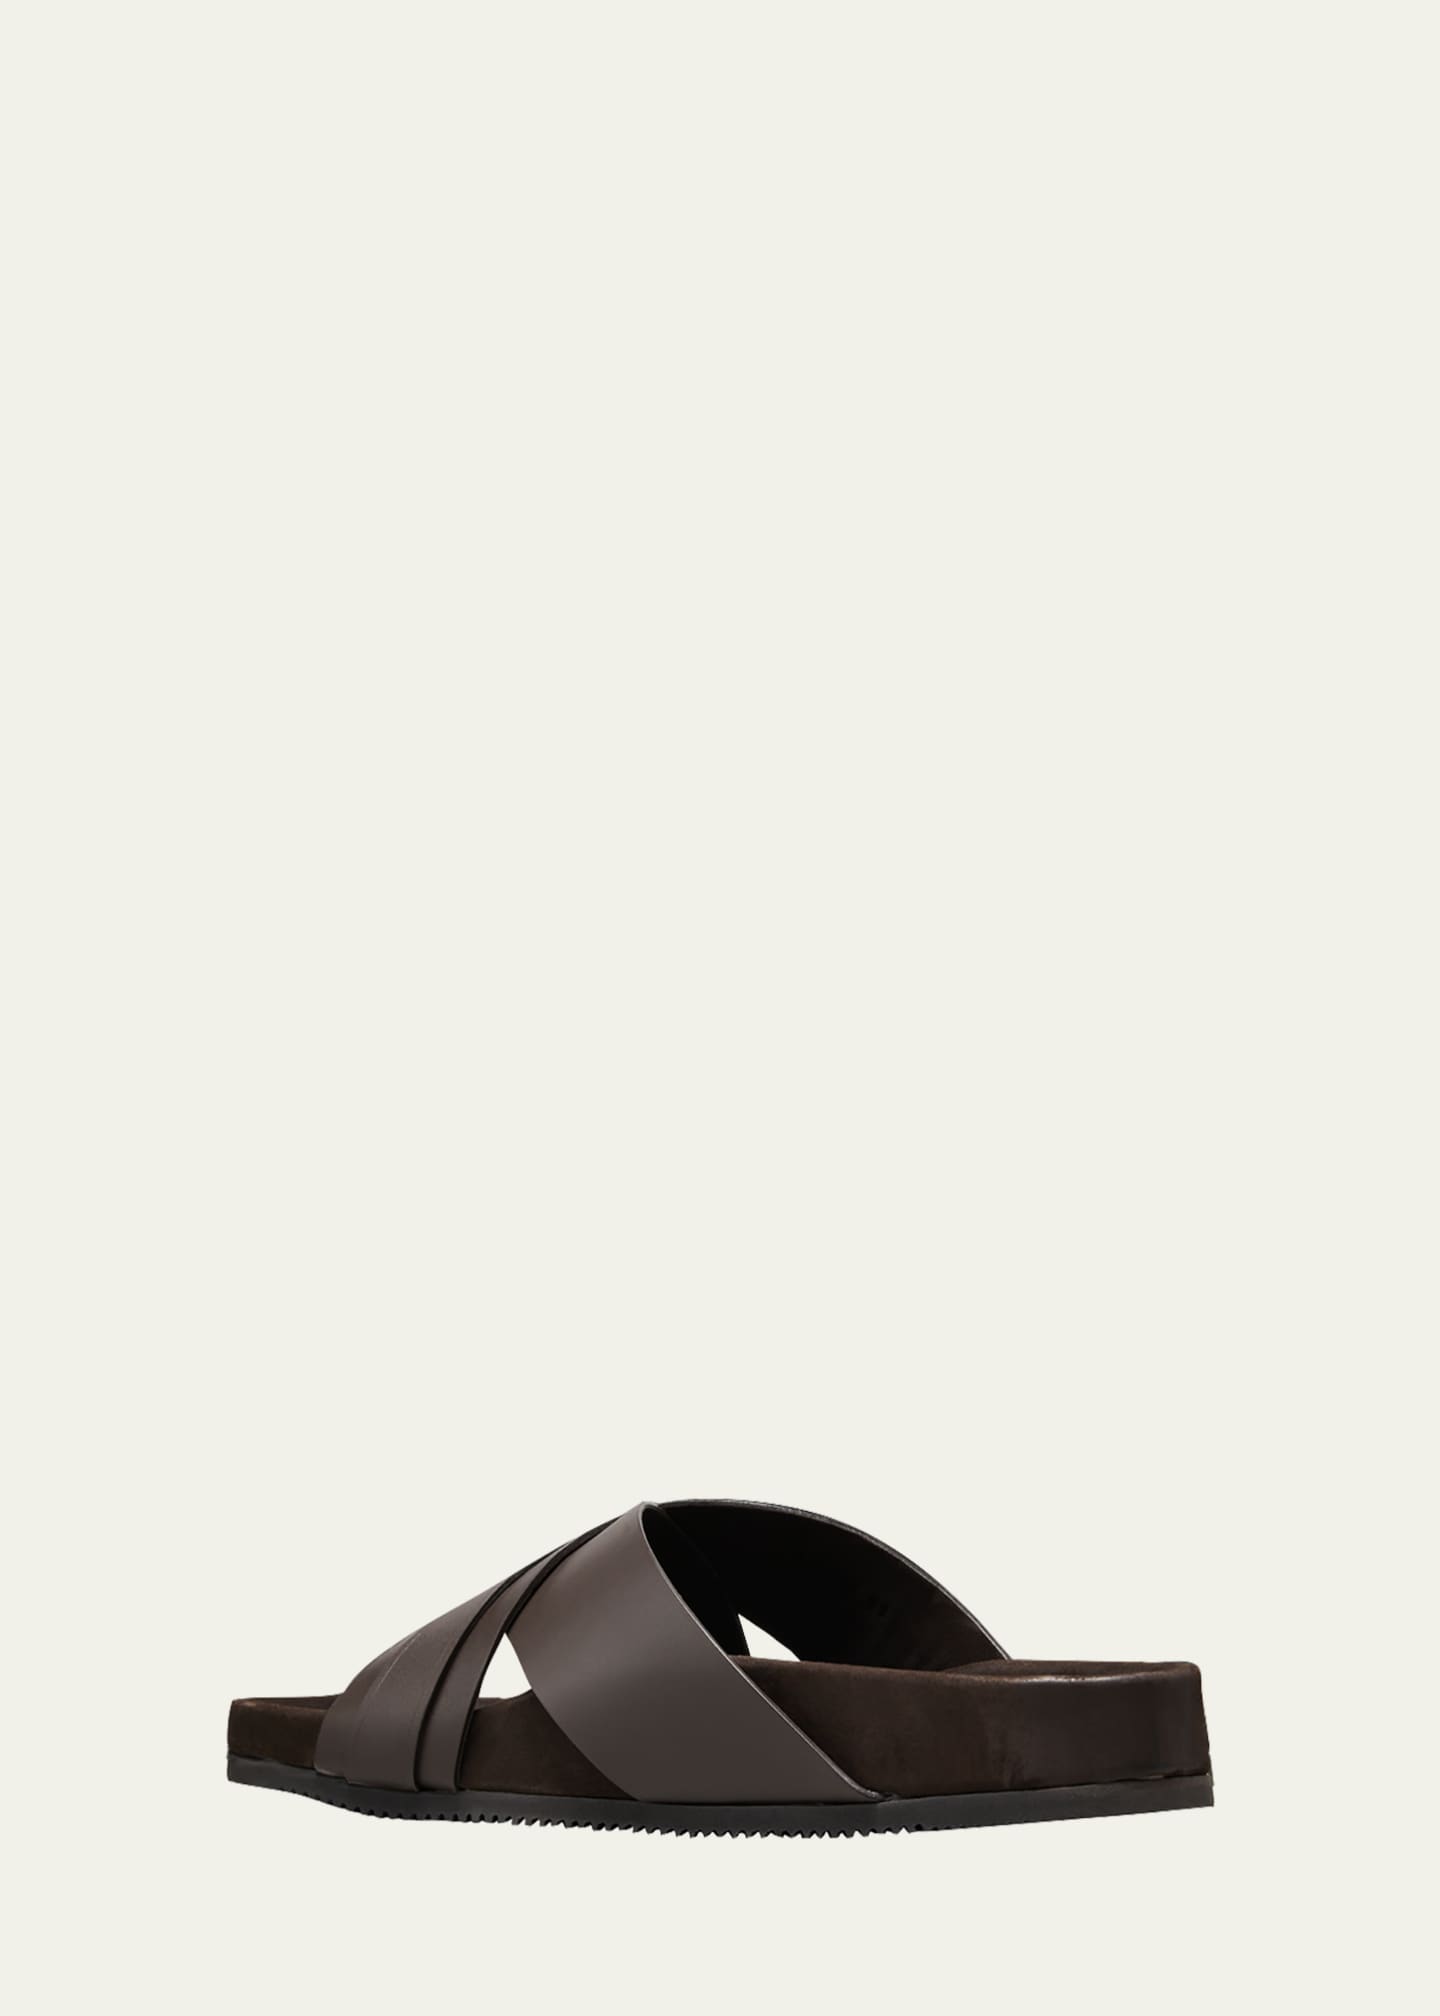 TOM FORD Men's Crisscross Leather Slide sandals - Bergdorf Goodman